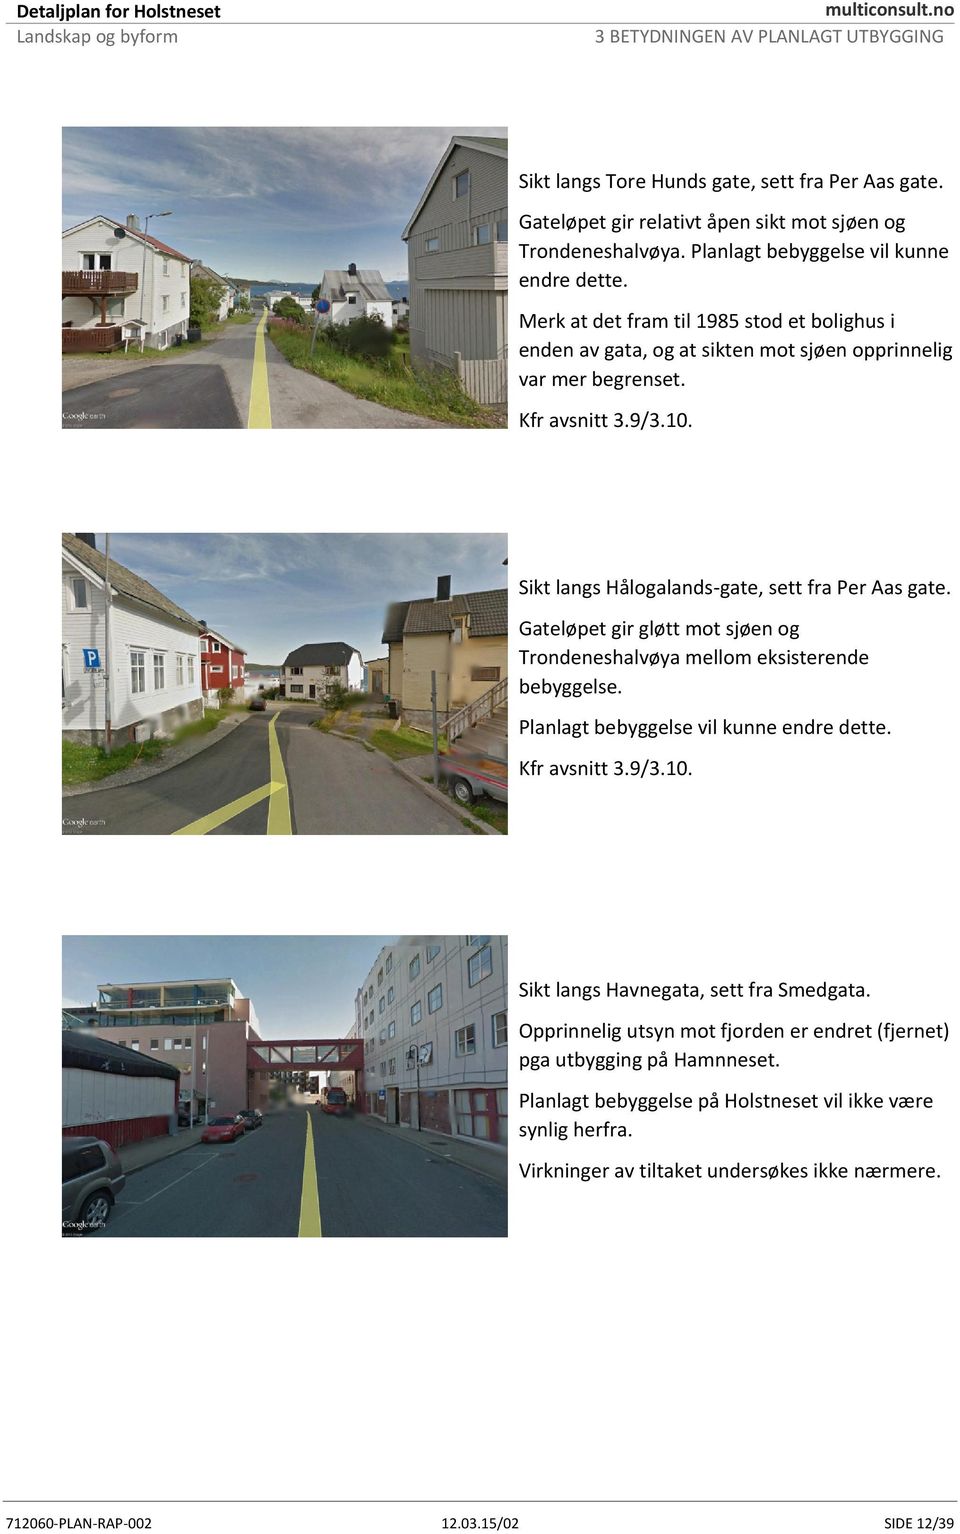 Gateløpet gir gløtt mot sjøen og Trondeneshalvøya mellom eksisterende bebyggelse. Planlagt bebyggelse vil kunne endre dette. Kfr avsnitt 3.9/3.10. Sikt langs Havnegata, sett fra Smedgata.